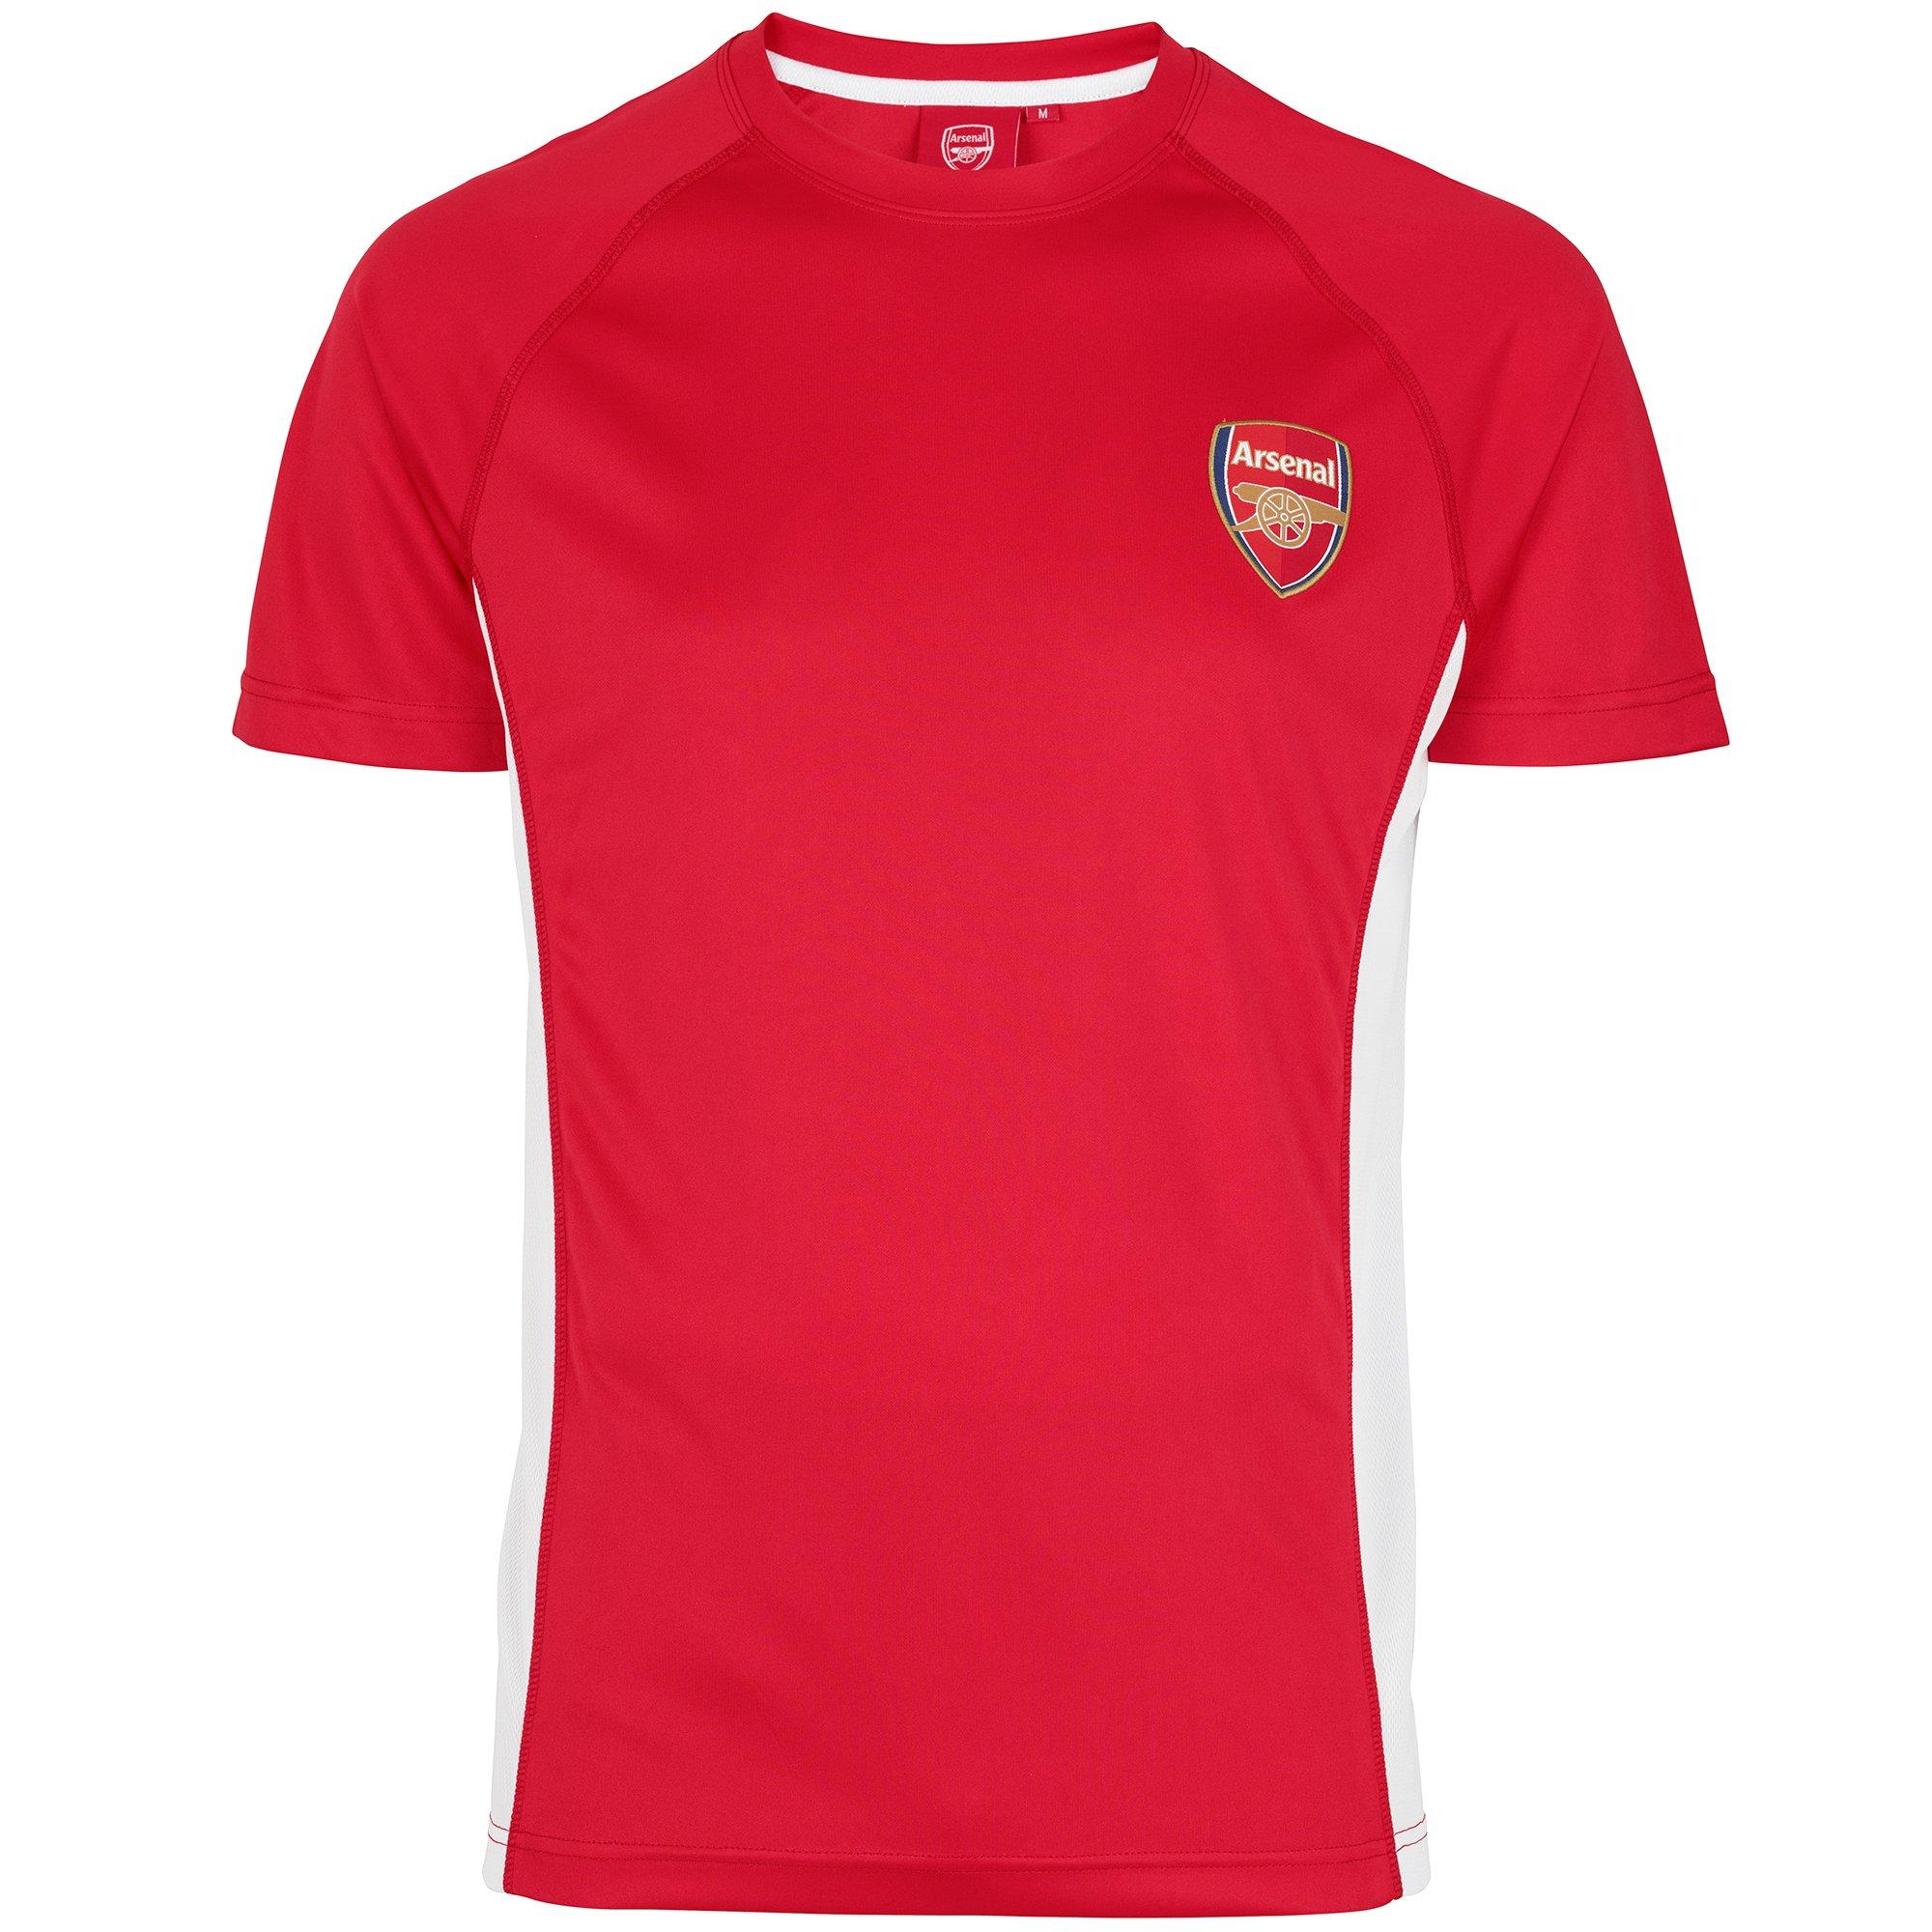 Arsenal ‘Gooner’ Kids Tshirt 13-14 Years BNWT